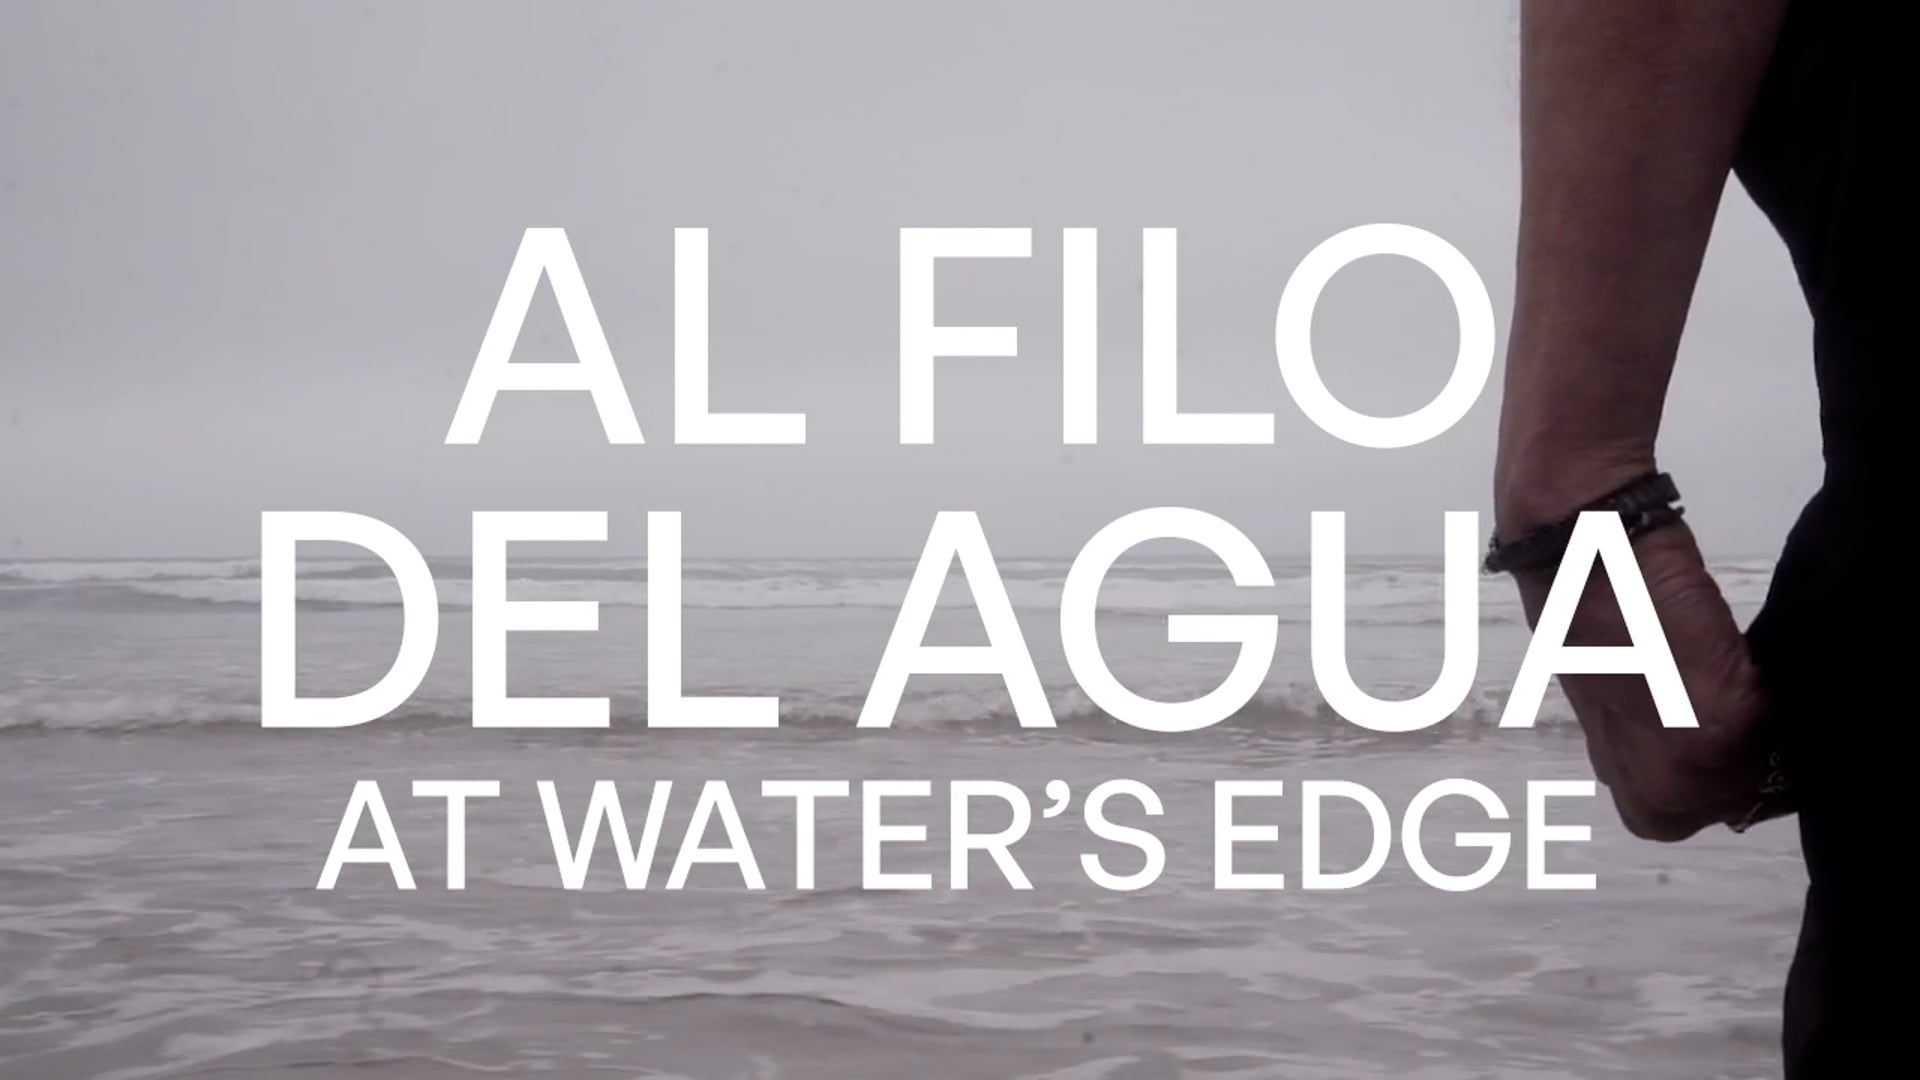 Trailer: Al filo del agua / At Water's Edge